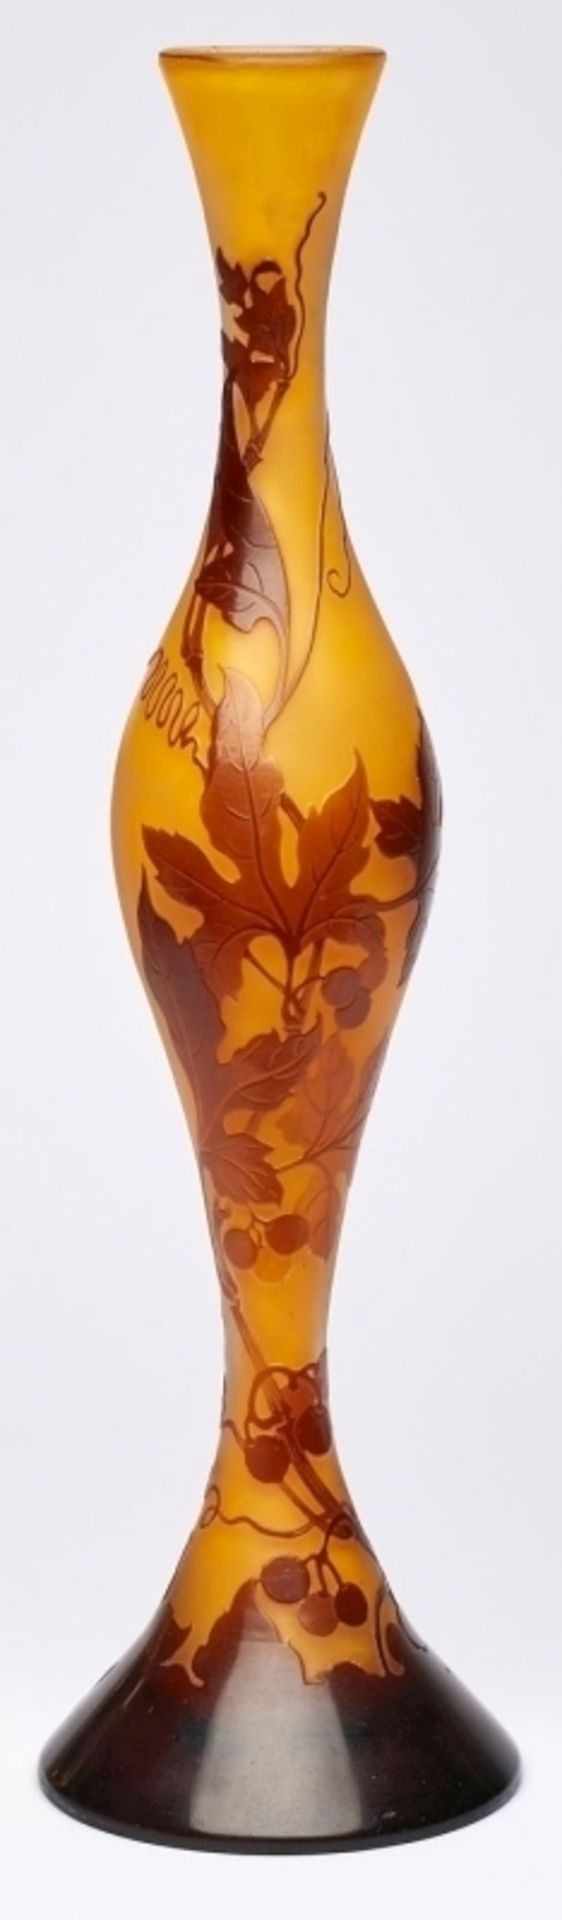 Solifleur-Vase "Wilder Wein", Gallé